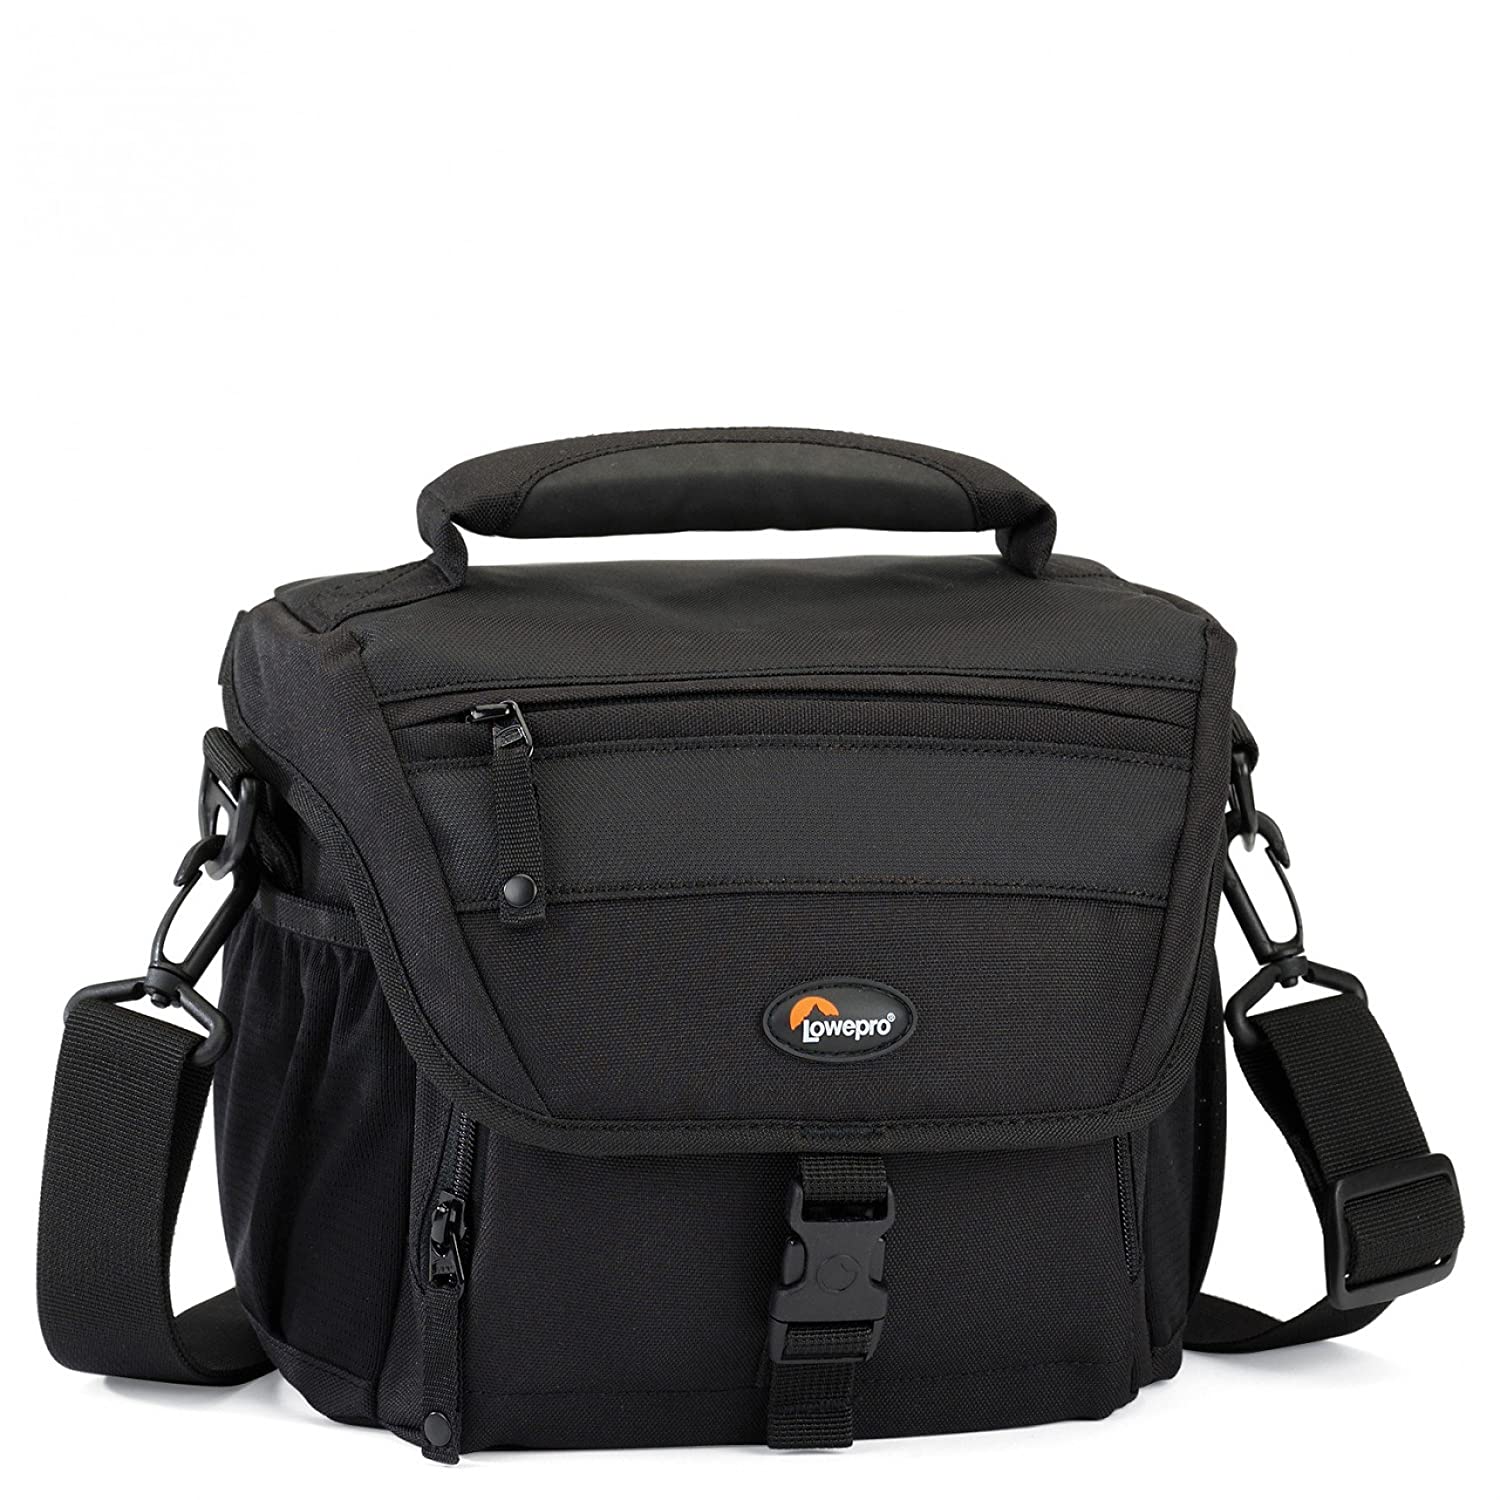 Lowepro Nova 160 AW Shoulder Bag (Black) - The Camerashop